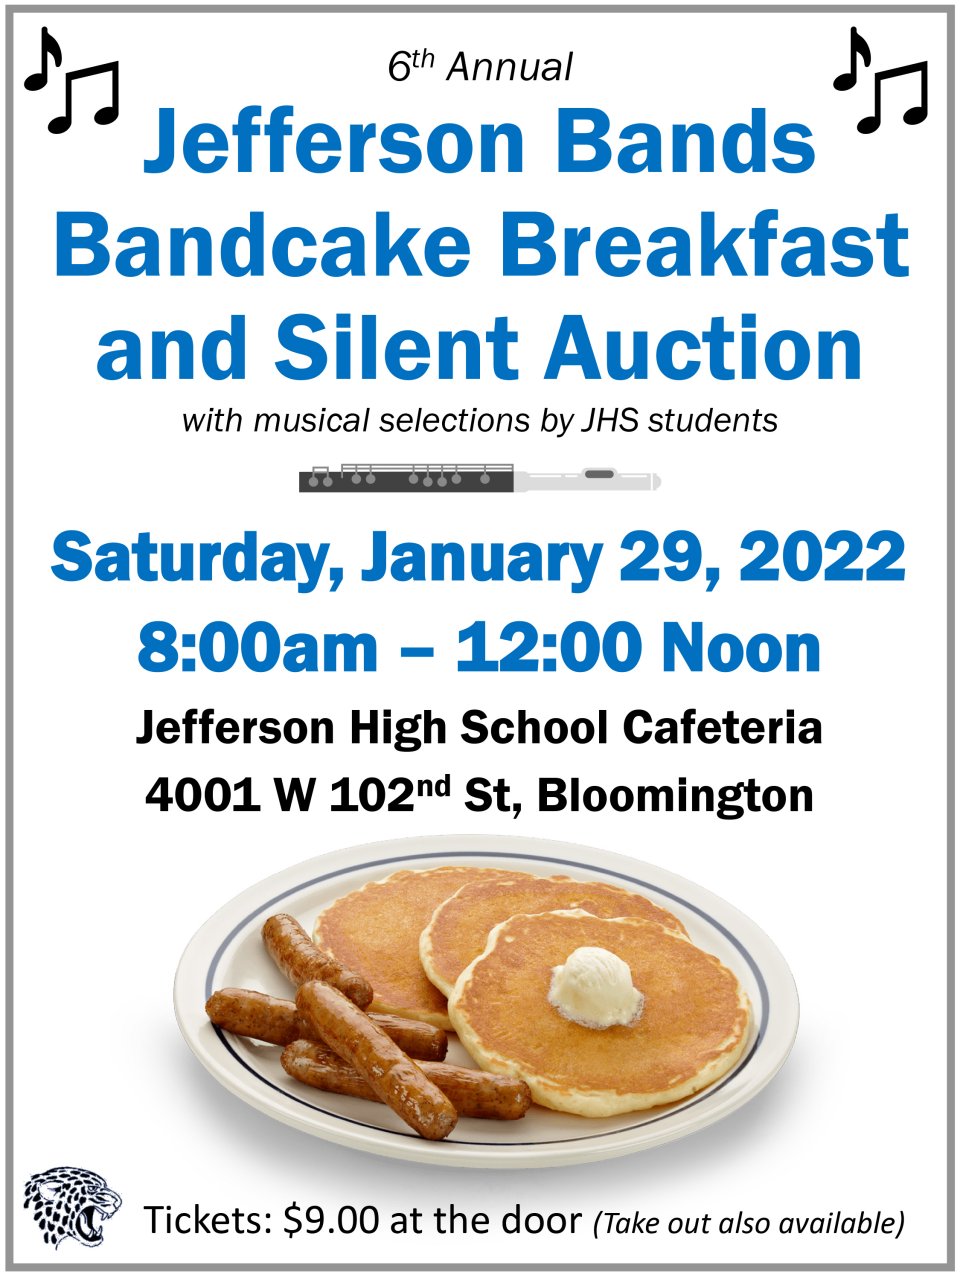 Information about Jefferson's 'Bandcake' Breakfast Fundraiser